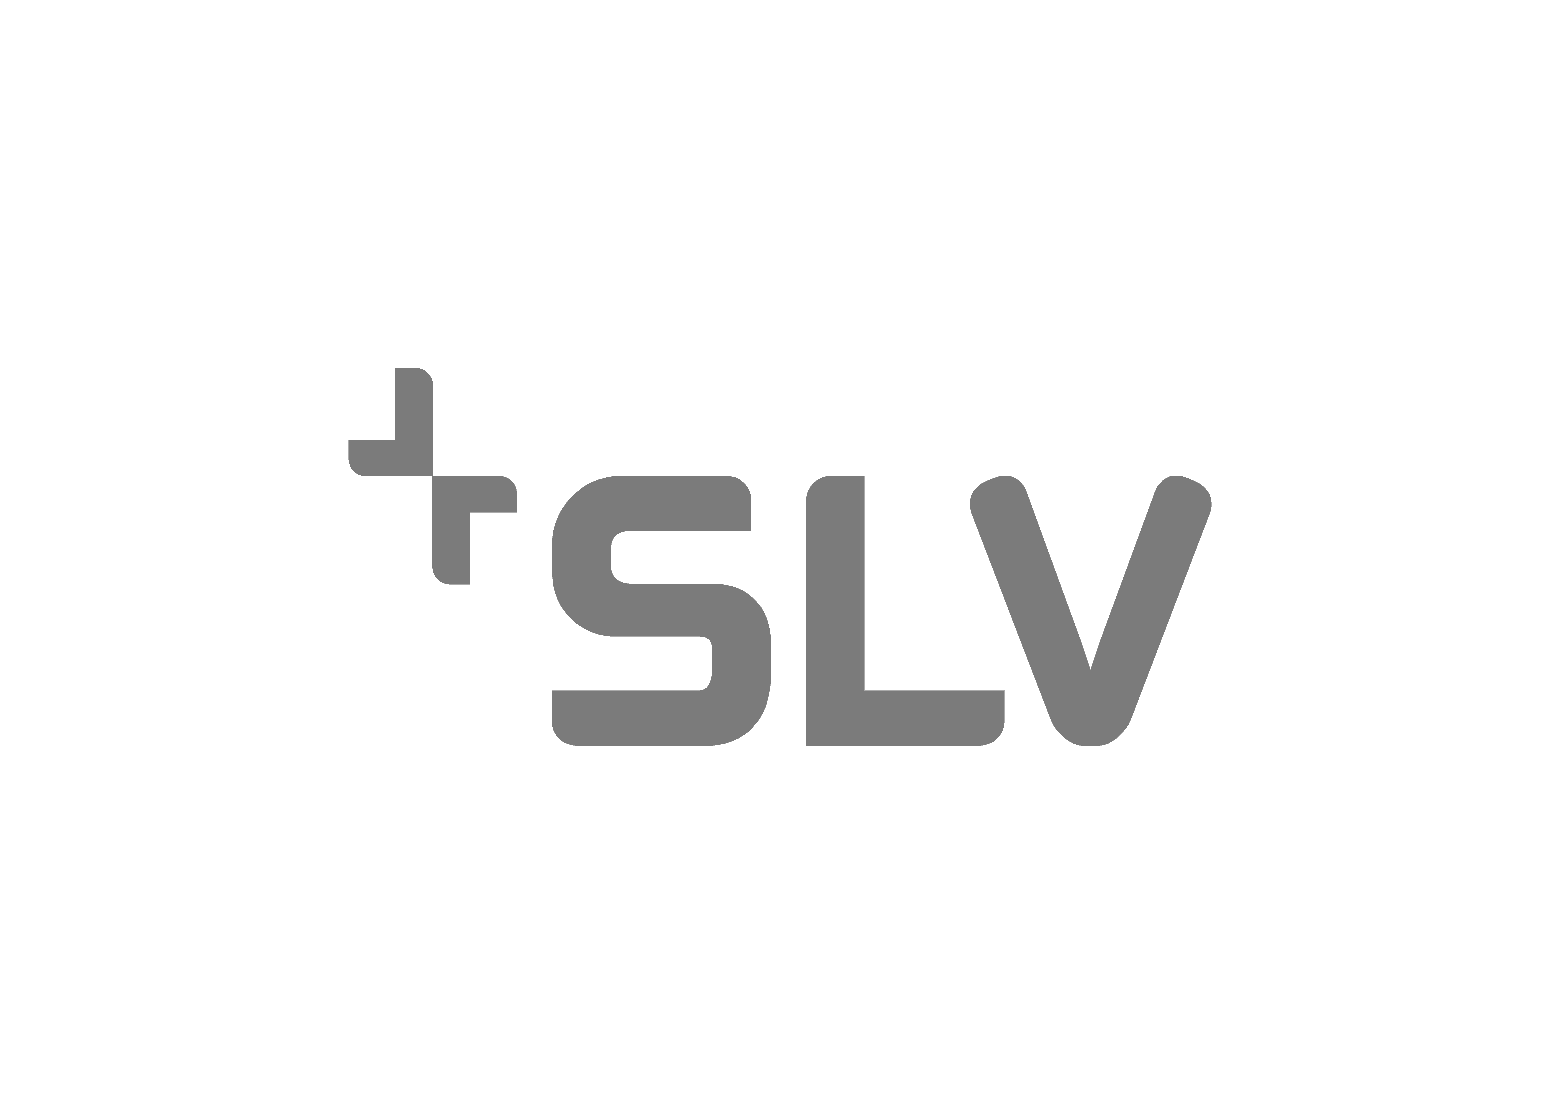 slv-gmbh-logo-vector-gr-tr